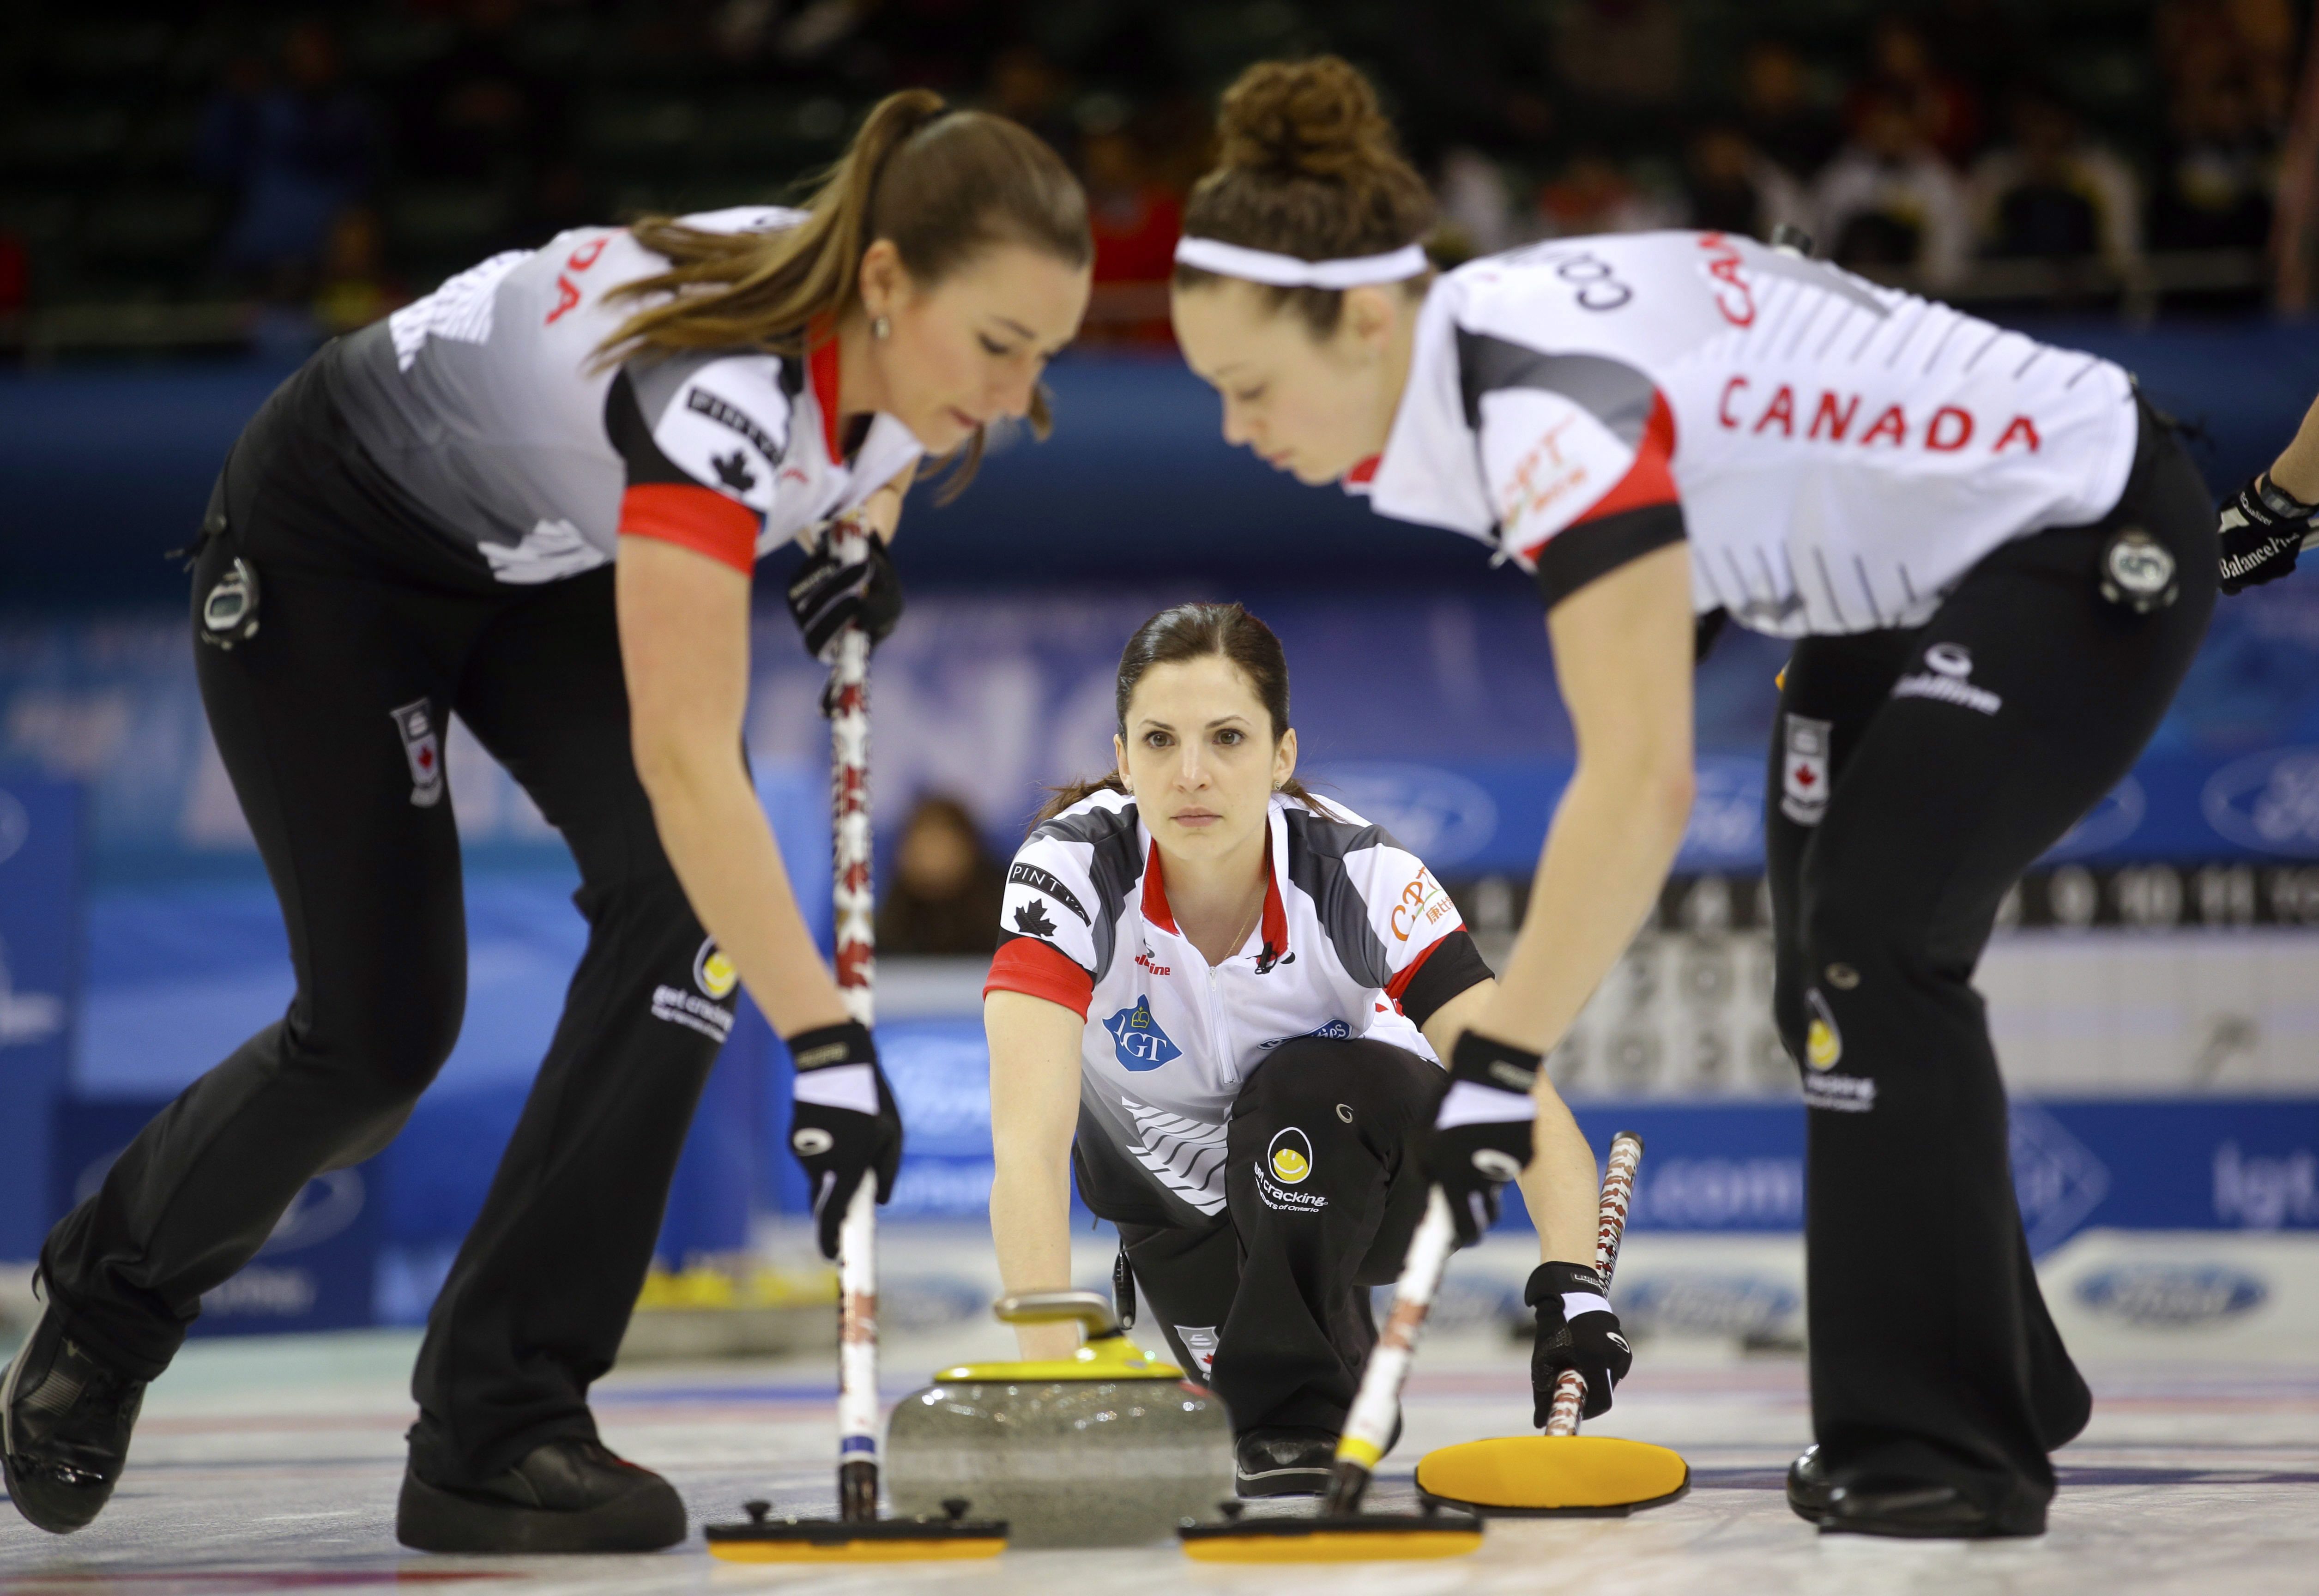 La Canadienne Lisa Weagle (centre) observe ses coéquipières Emma Miskew (gauche) et Joanne Courtney à l'oeuvre face à l'Italie au Championnat du monde de curling féminin, le 23 mars 2017. (AP Photo/Mark Schiefelbein)